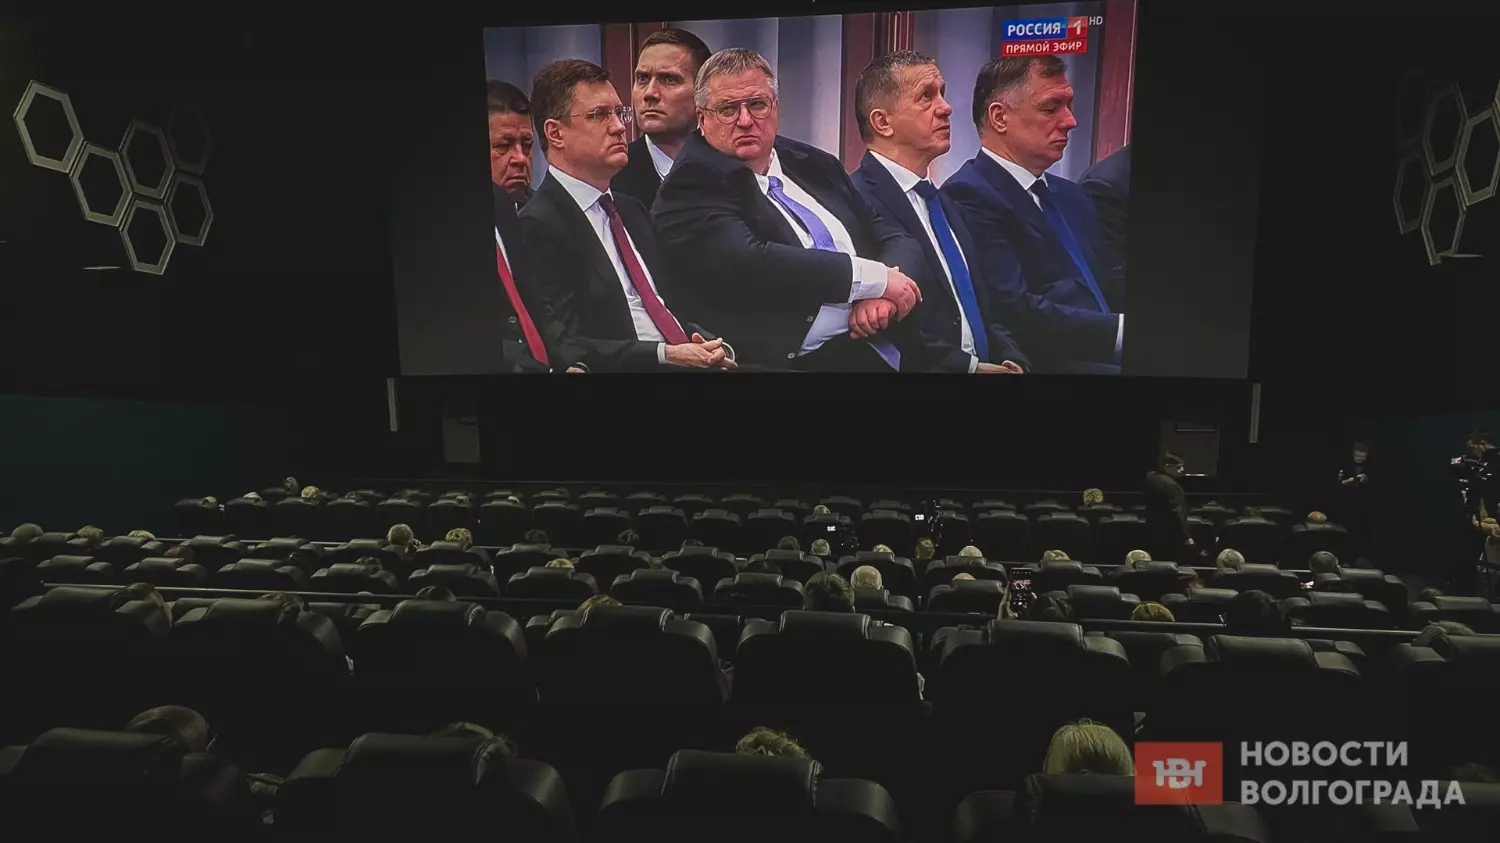 В Волгограде впервые прошел показ послания Президента Федеральному собранию в кинотеатре